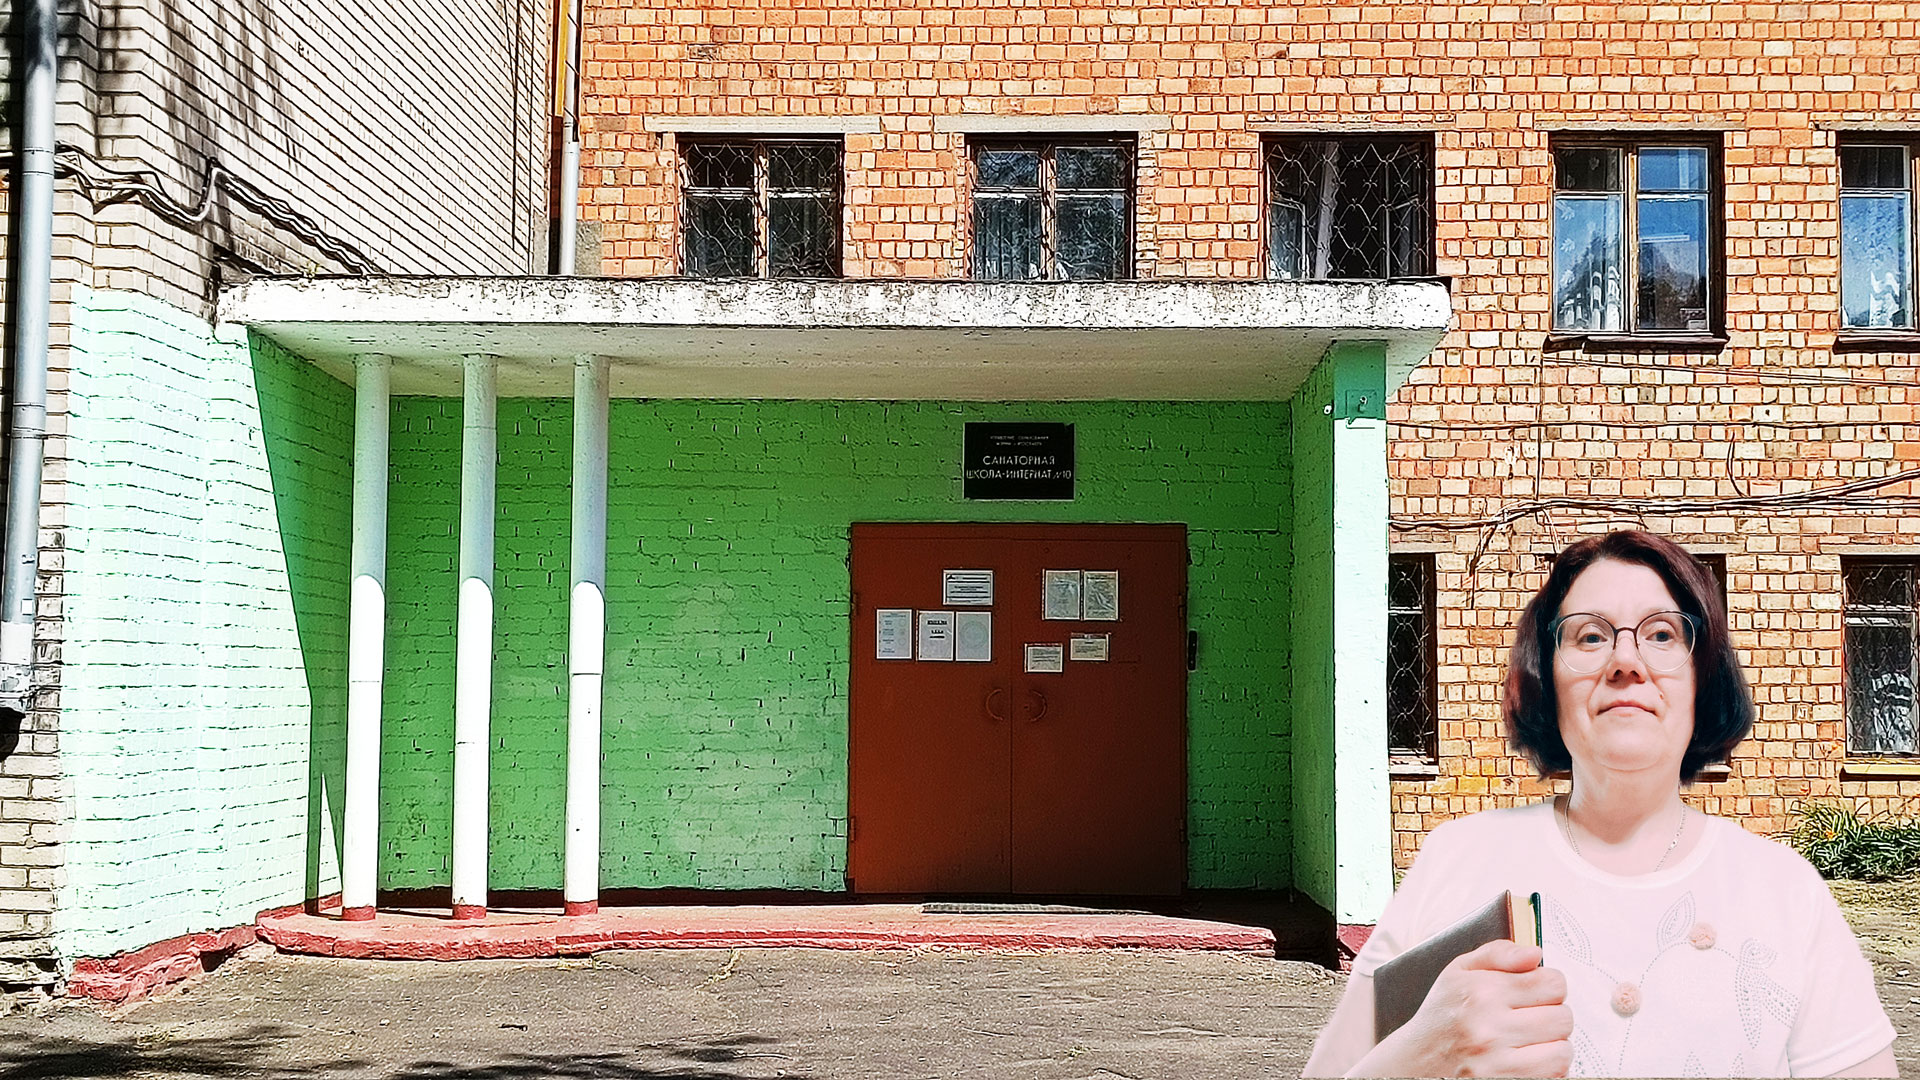 Санаторная школа-интернат 10 Ярославль: центральный вход в здание школьной организации.